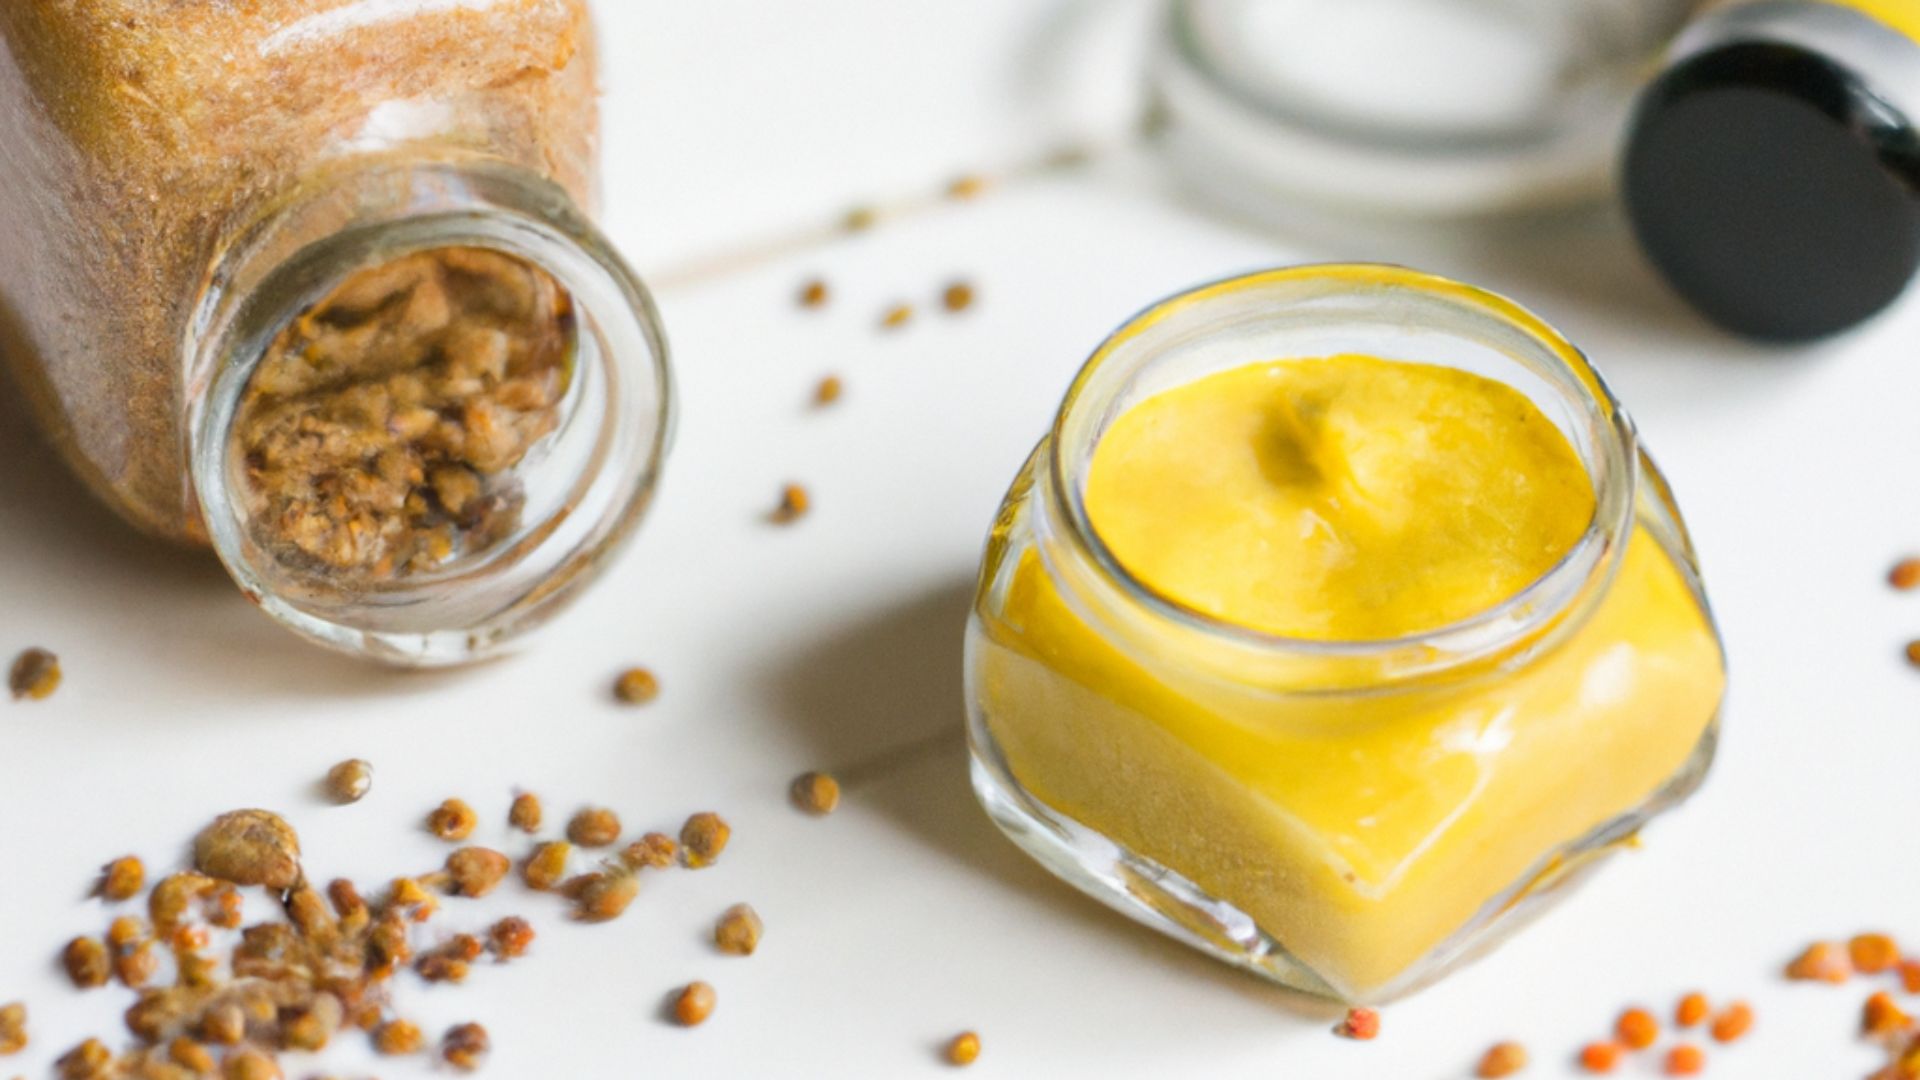  Apprenez à préparer une sauce au miel et à la moutarde et ajoutez une touche spéciale à vos recettes.